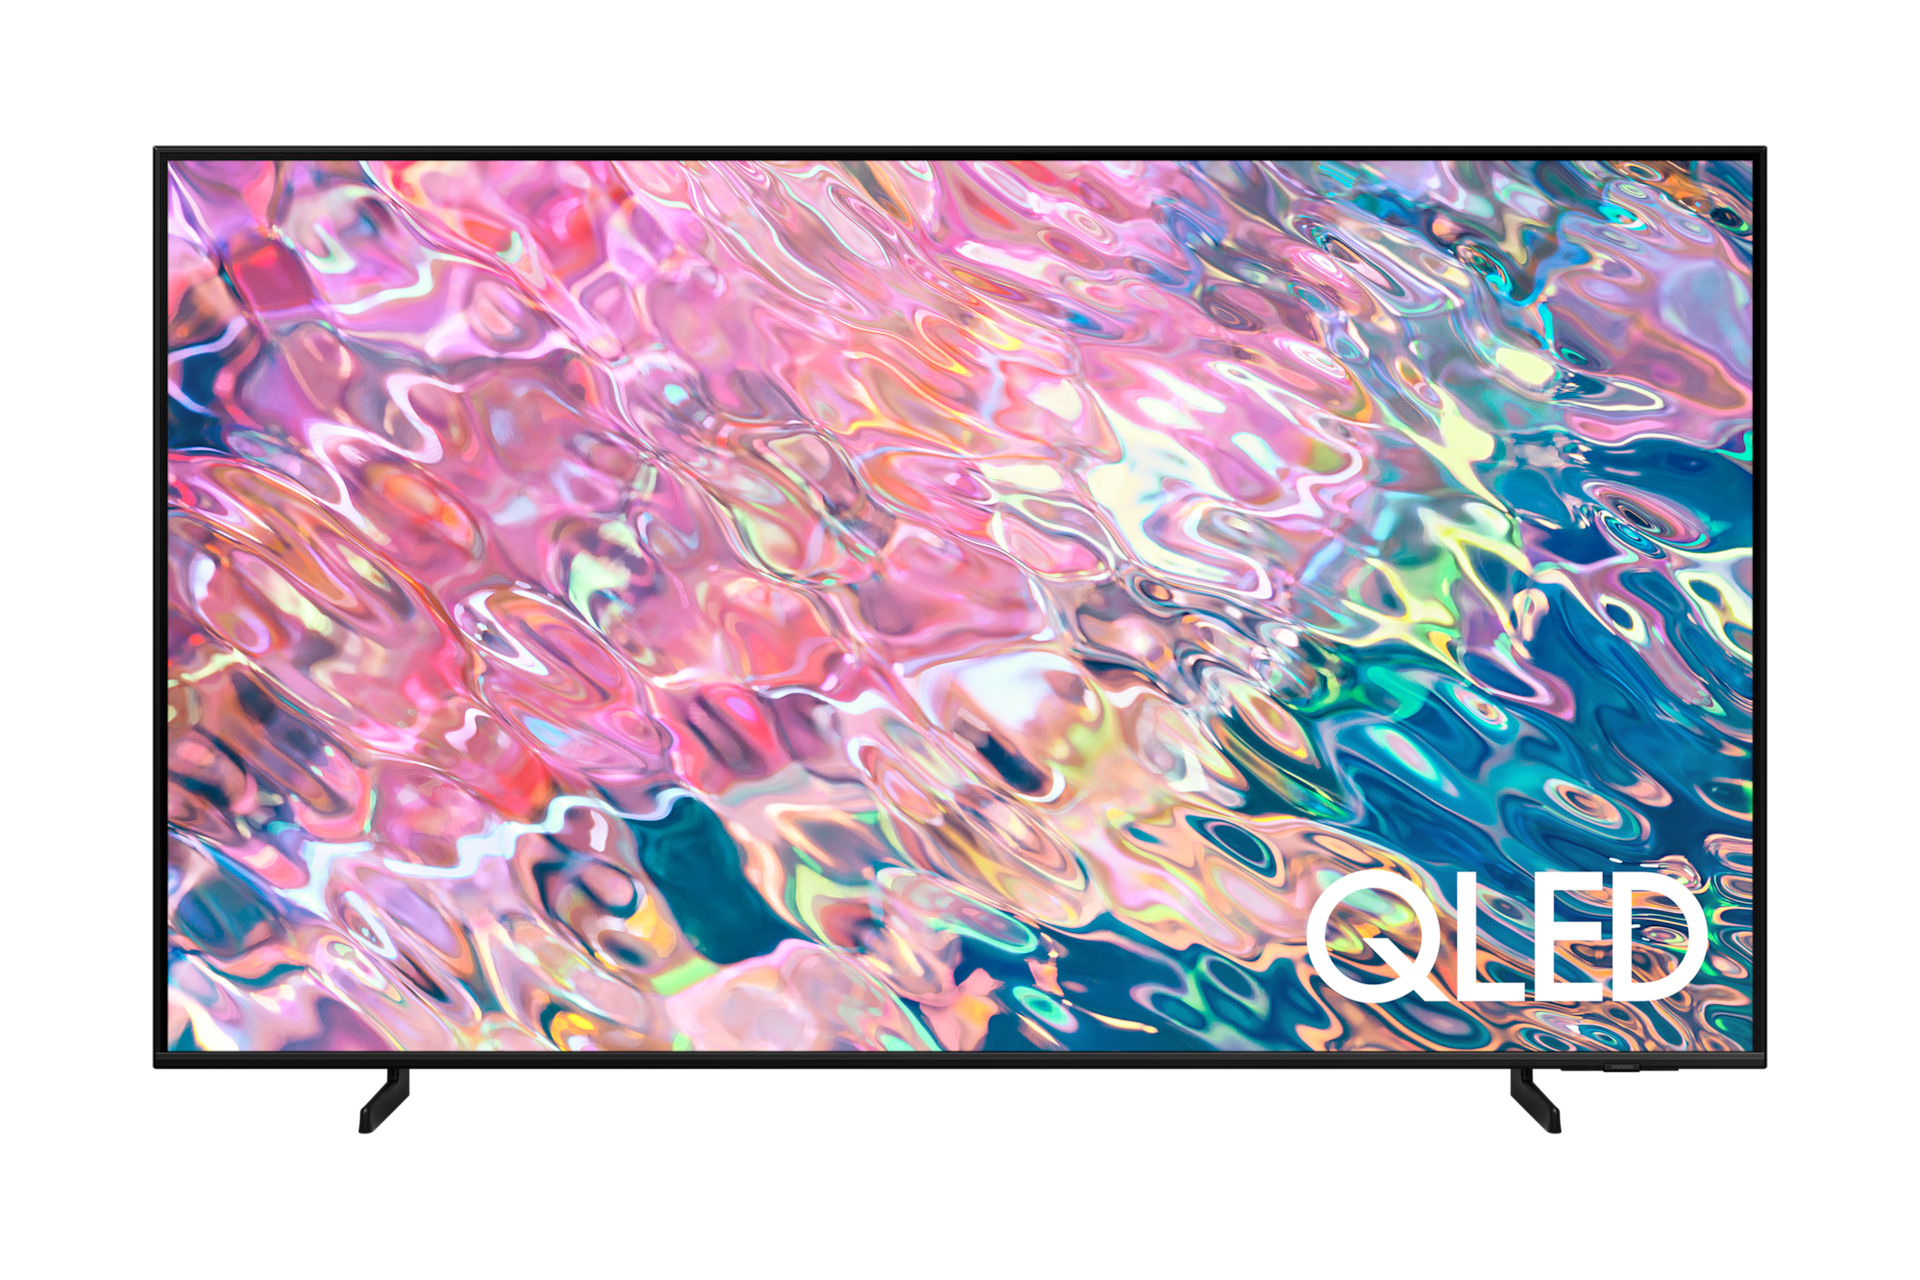 ดูราคา Samsung QLED 65 นิ้ว สมาร์ททีวีที่มาพร้อม Quantum HDR เผยรายละเอียดที่ซ่อนในภาพ พร้อมเทคโนโลยี Quantum Dot สีสวยสด 100%. ด้านหน้าของ Q63B QLED 65 นิ้ว สี Black ที่มีตัวหนังสือ QLED สีขาวระบุอยู่